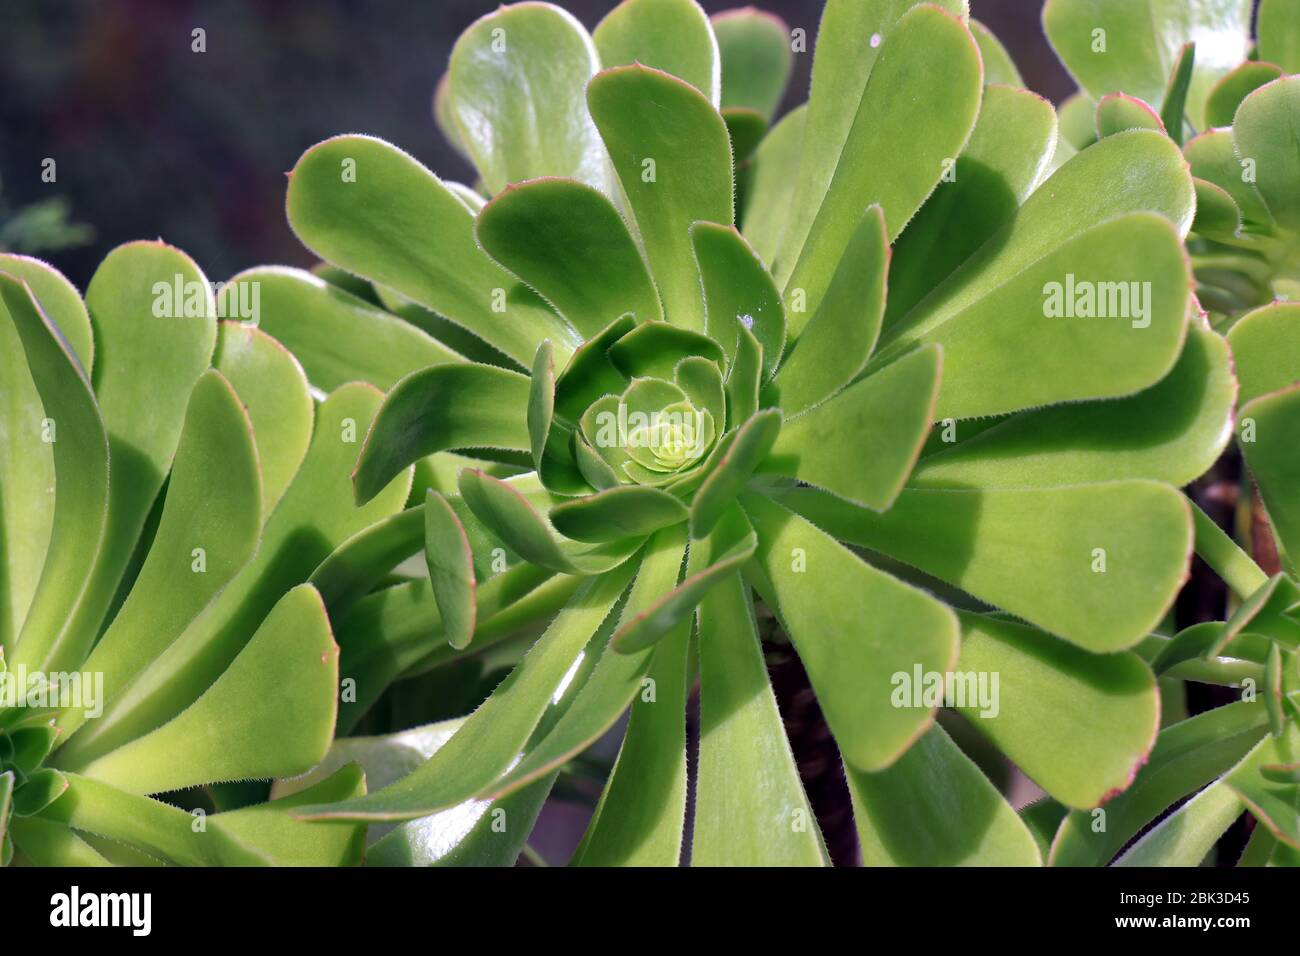 Arboreum d'Aeonium, vert succulent, gros plan. Rosettes vertes fraîches d'arboreum d'Aeonium. Plantes succulentes de l'arboreum d'Aeonium. Banque D'Images